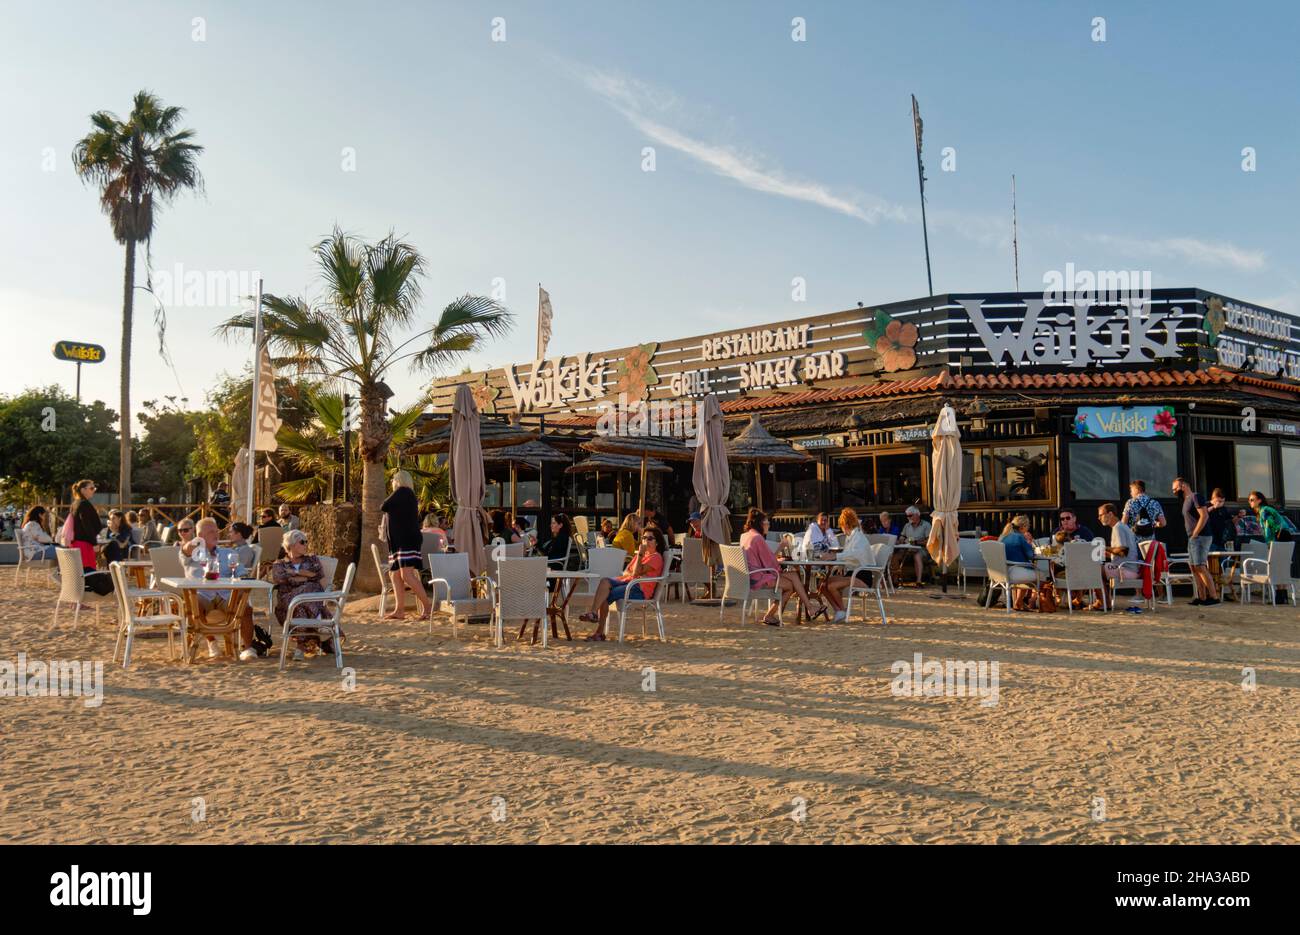 Beach bar Waikiki am Strand von Corralejo, Fuerteventura, Kanarische Inseln, Spanien Stock Photo